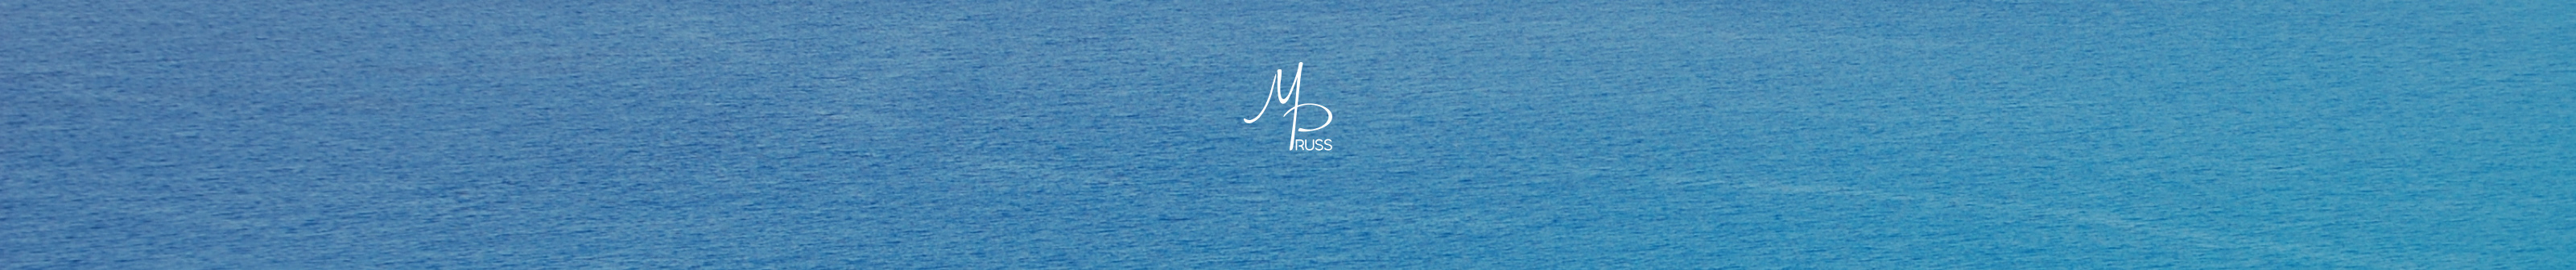 Banner de perfil de Marina Pruss